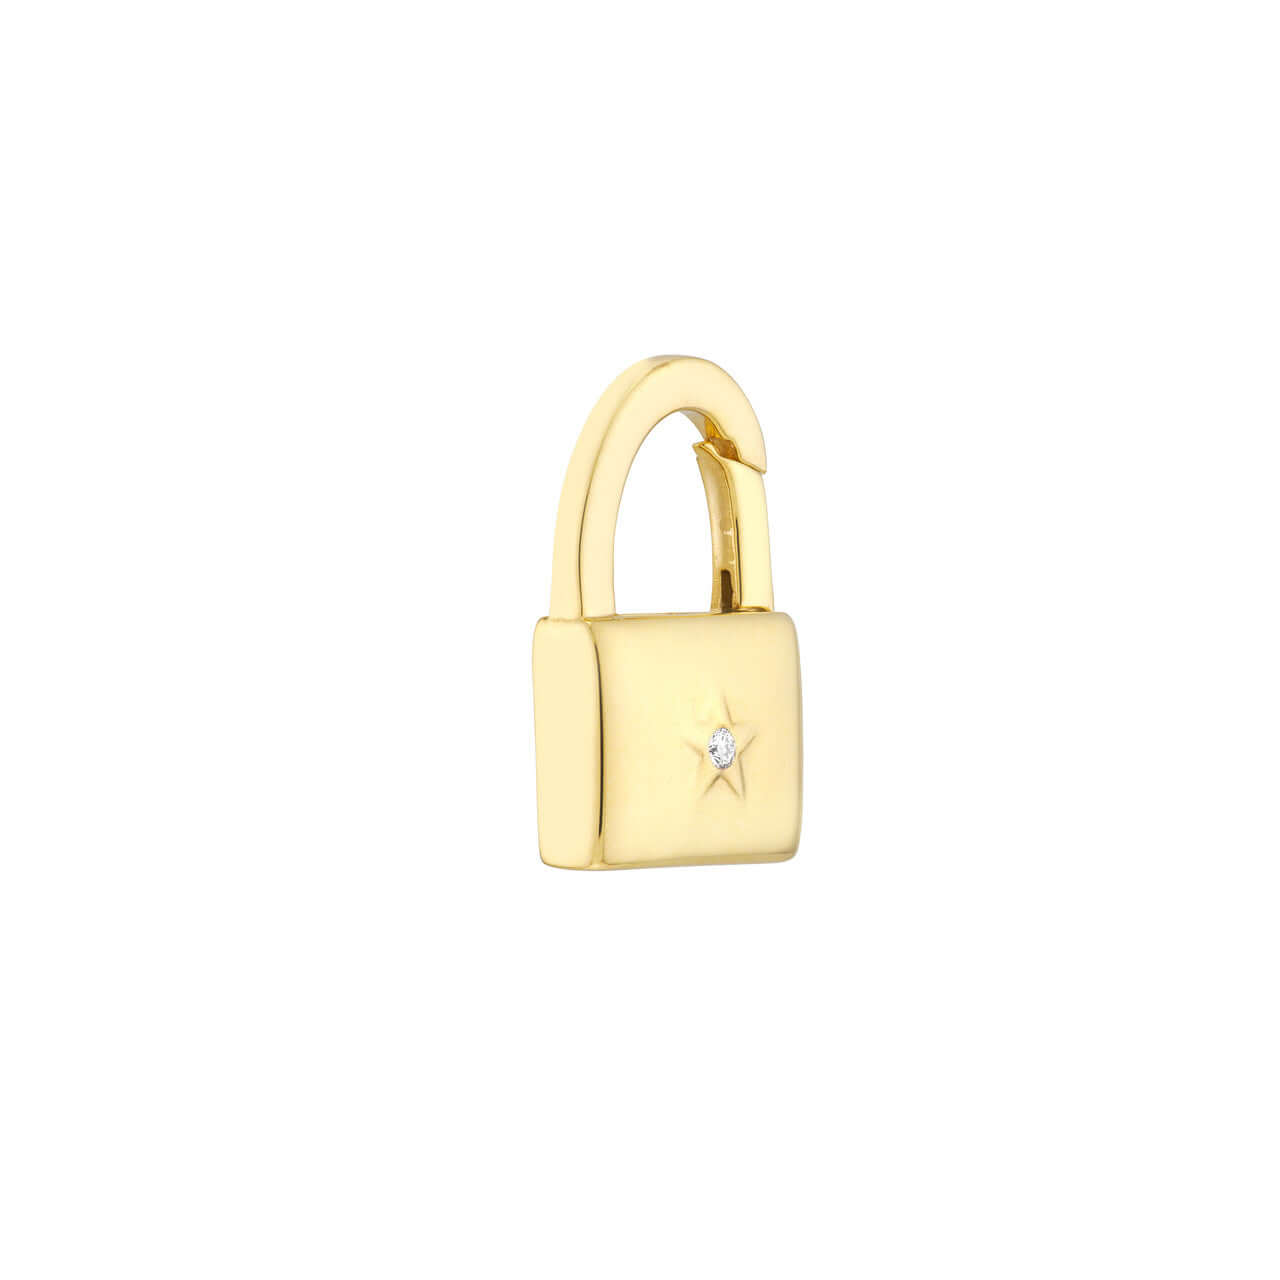 Louis Vuitton Lock It Key Padlock Diamonds 18k White Gold Pendant